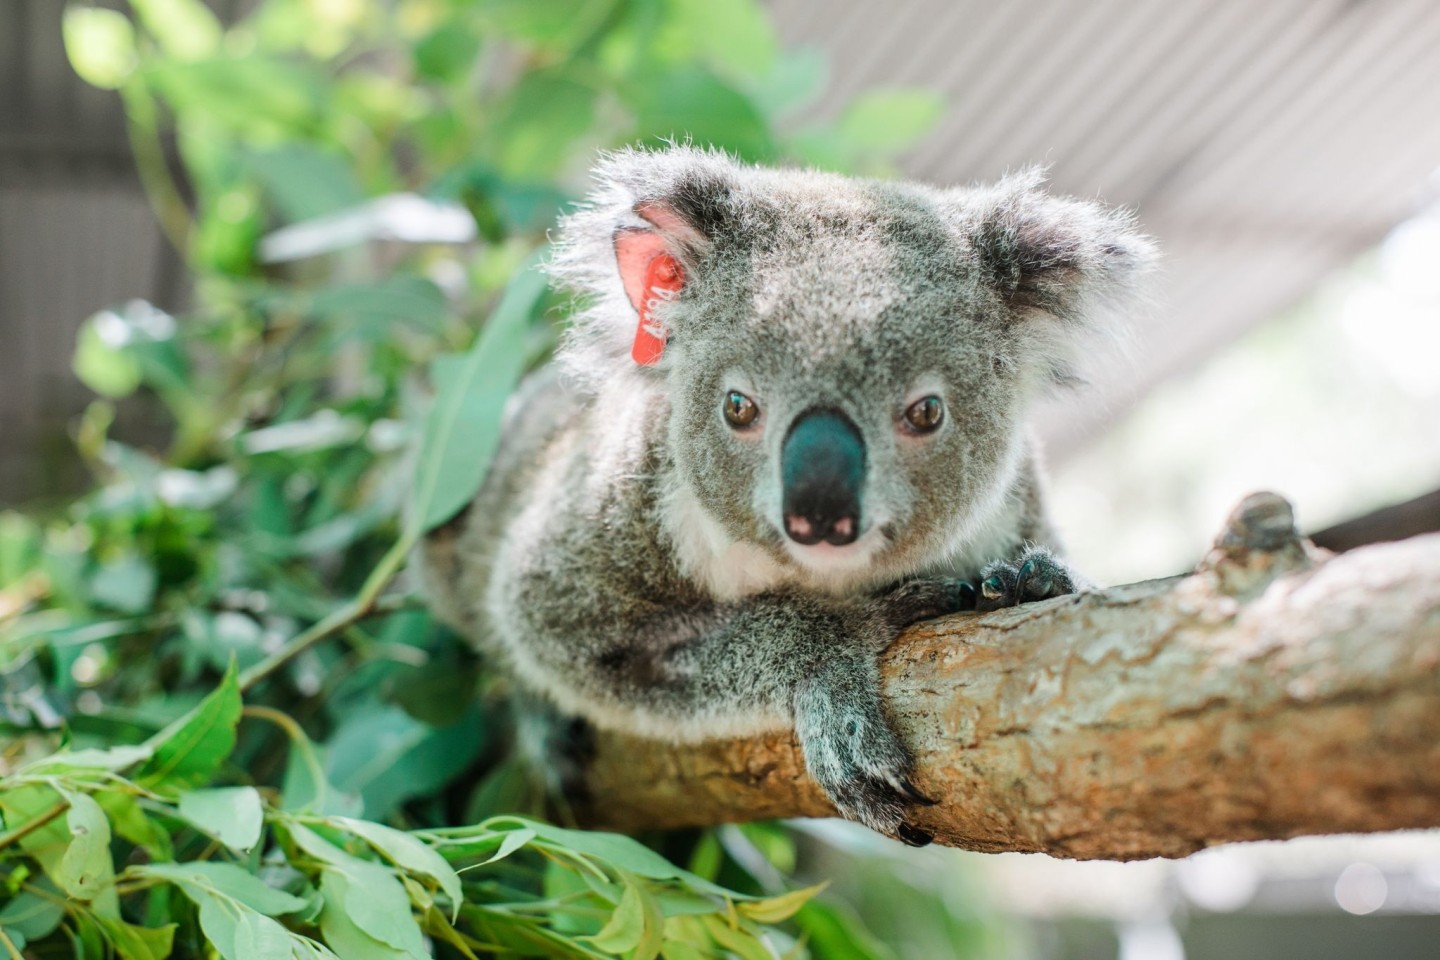 Koala Ember wird bereits zum zweiten Mal Mutter. In Ihrem Beutel sei ein winziges Junges entdeckt worden, teilte der Internationale Tierschutz-Fonds (IFAW) mit.